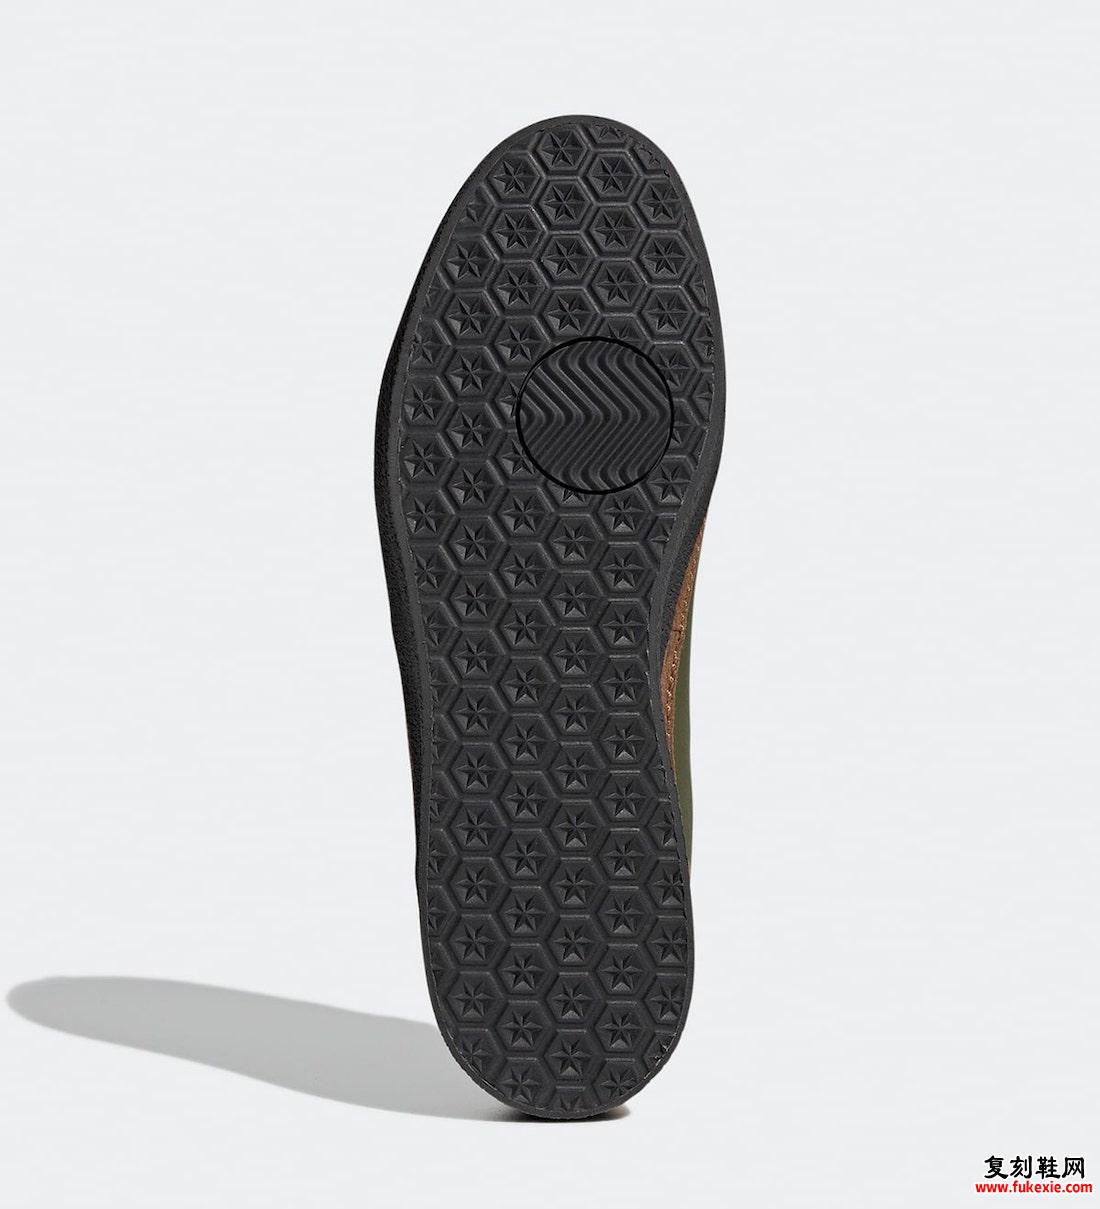 辛普森一家 adidas McCarten Ned Flanders GY8439 发布日期信息